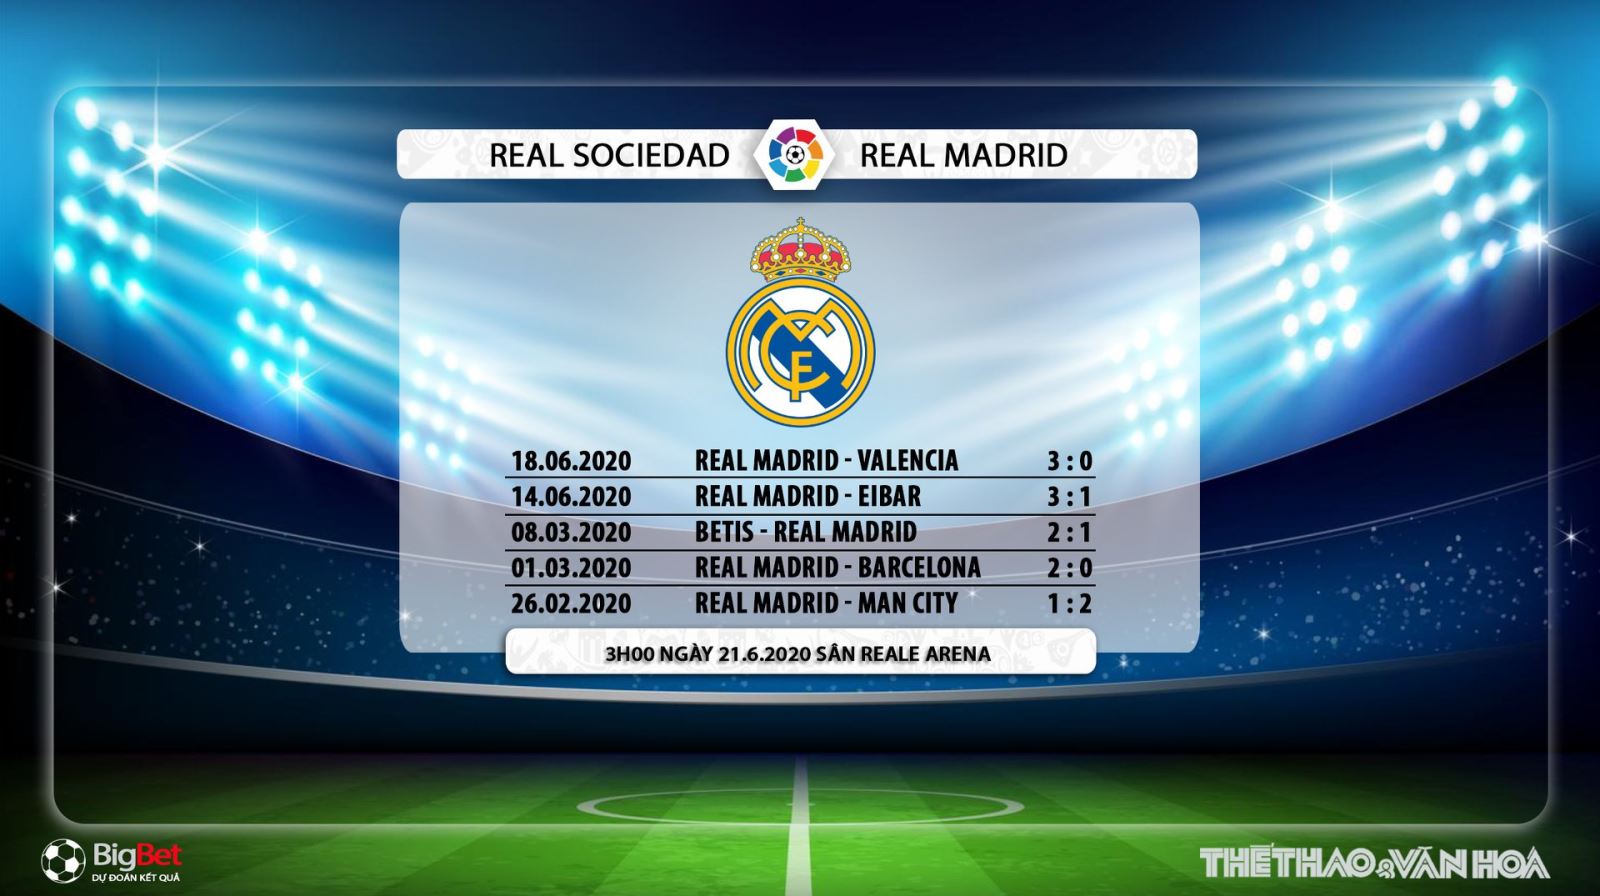 Real Sociedad vs Real Madrid, Real Madrid, Real Sociedad, trực tiếp bóng đá, nhận định bóng đá, kèo bóng đá, bóng đá hôm nay, lịch thi đấu